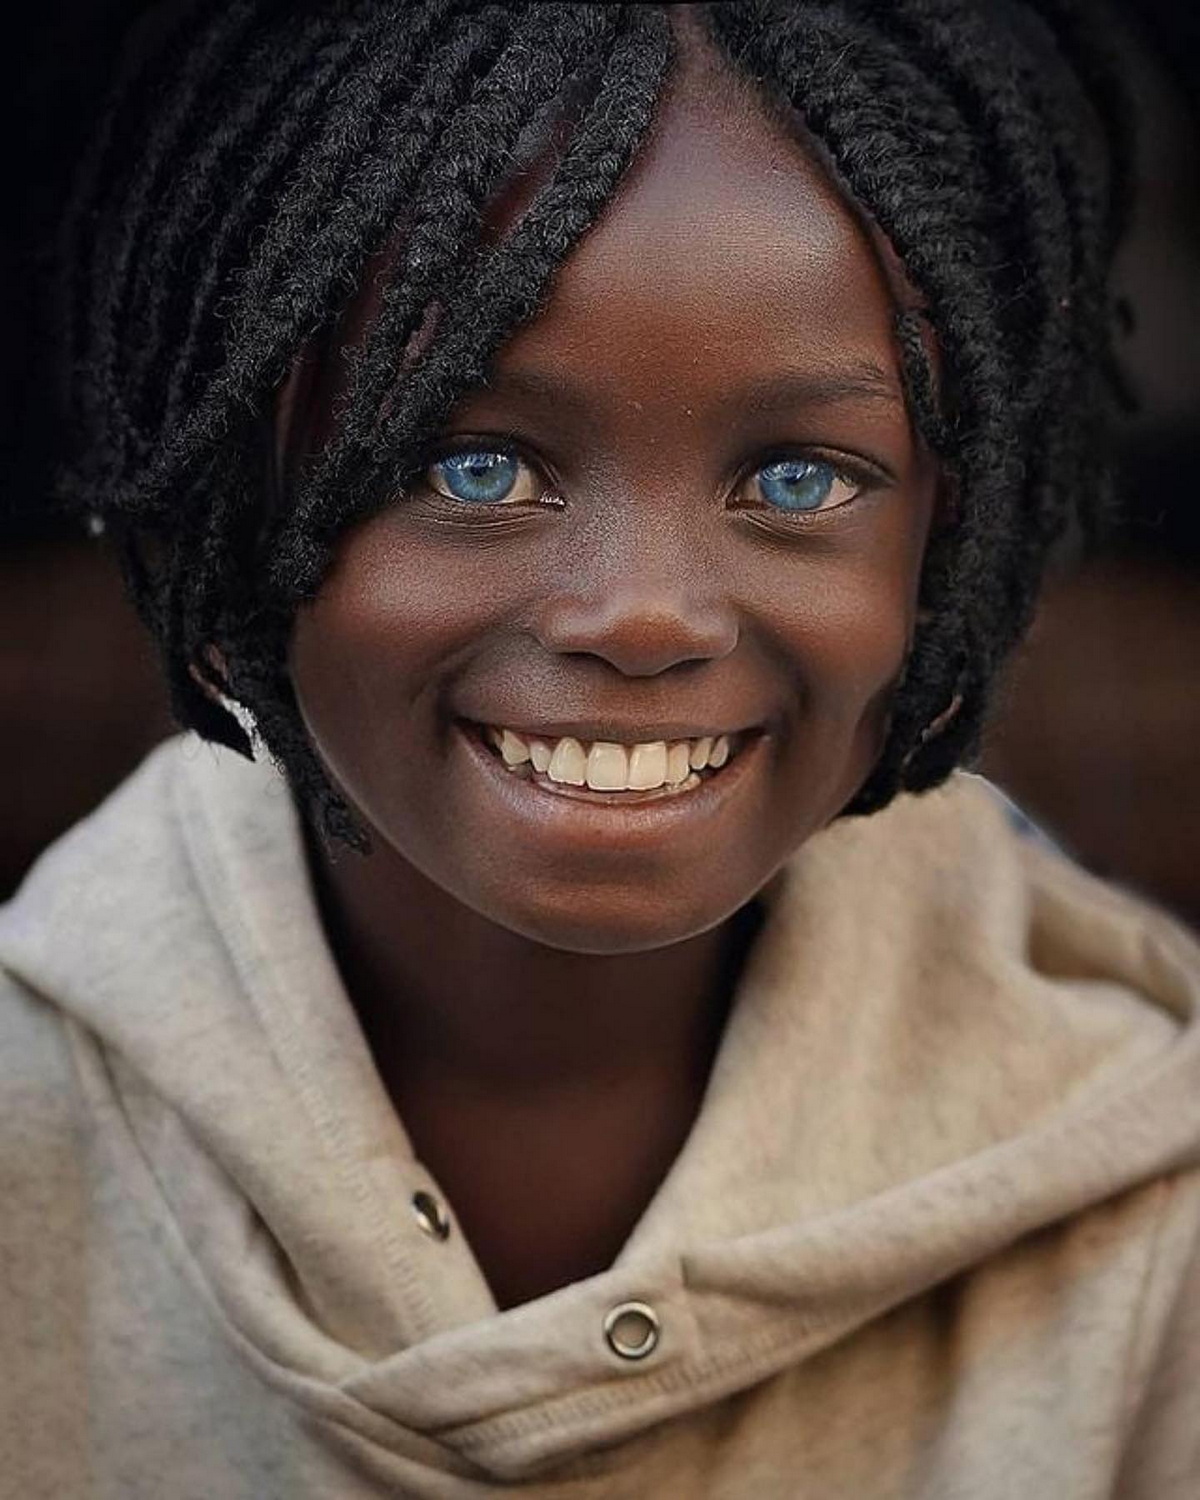 Турецкий фотограф Абдулла Айдемир запечатлел потрясающую красоту детских глаз